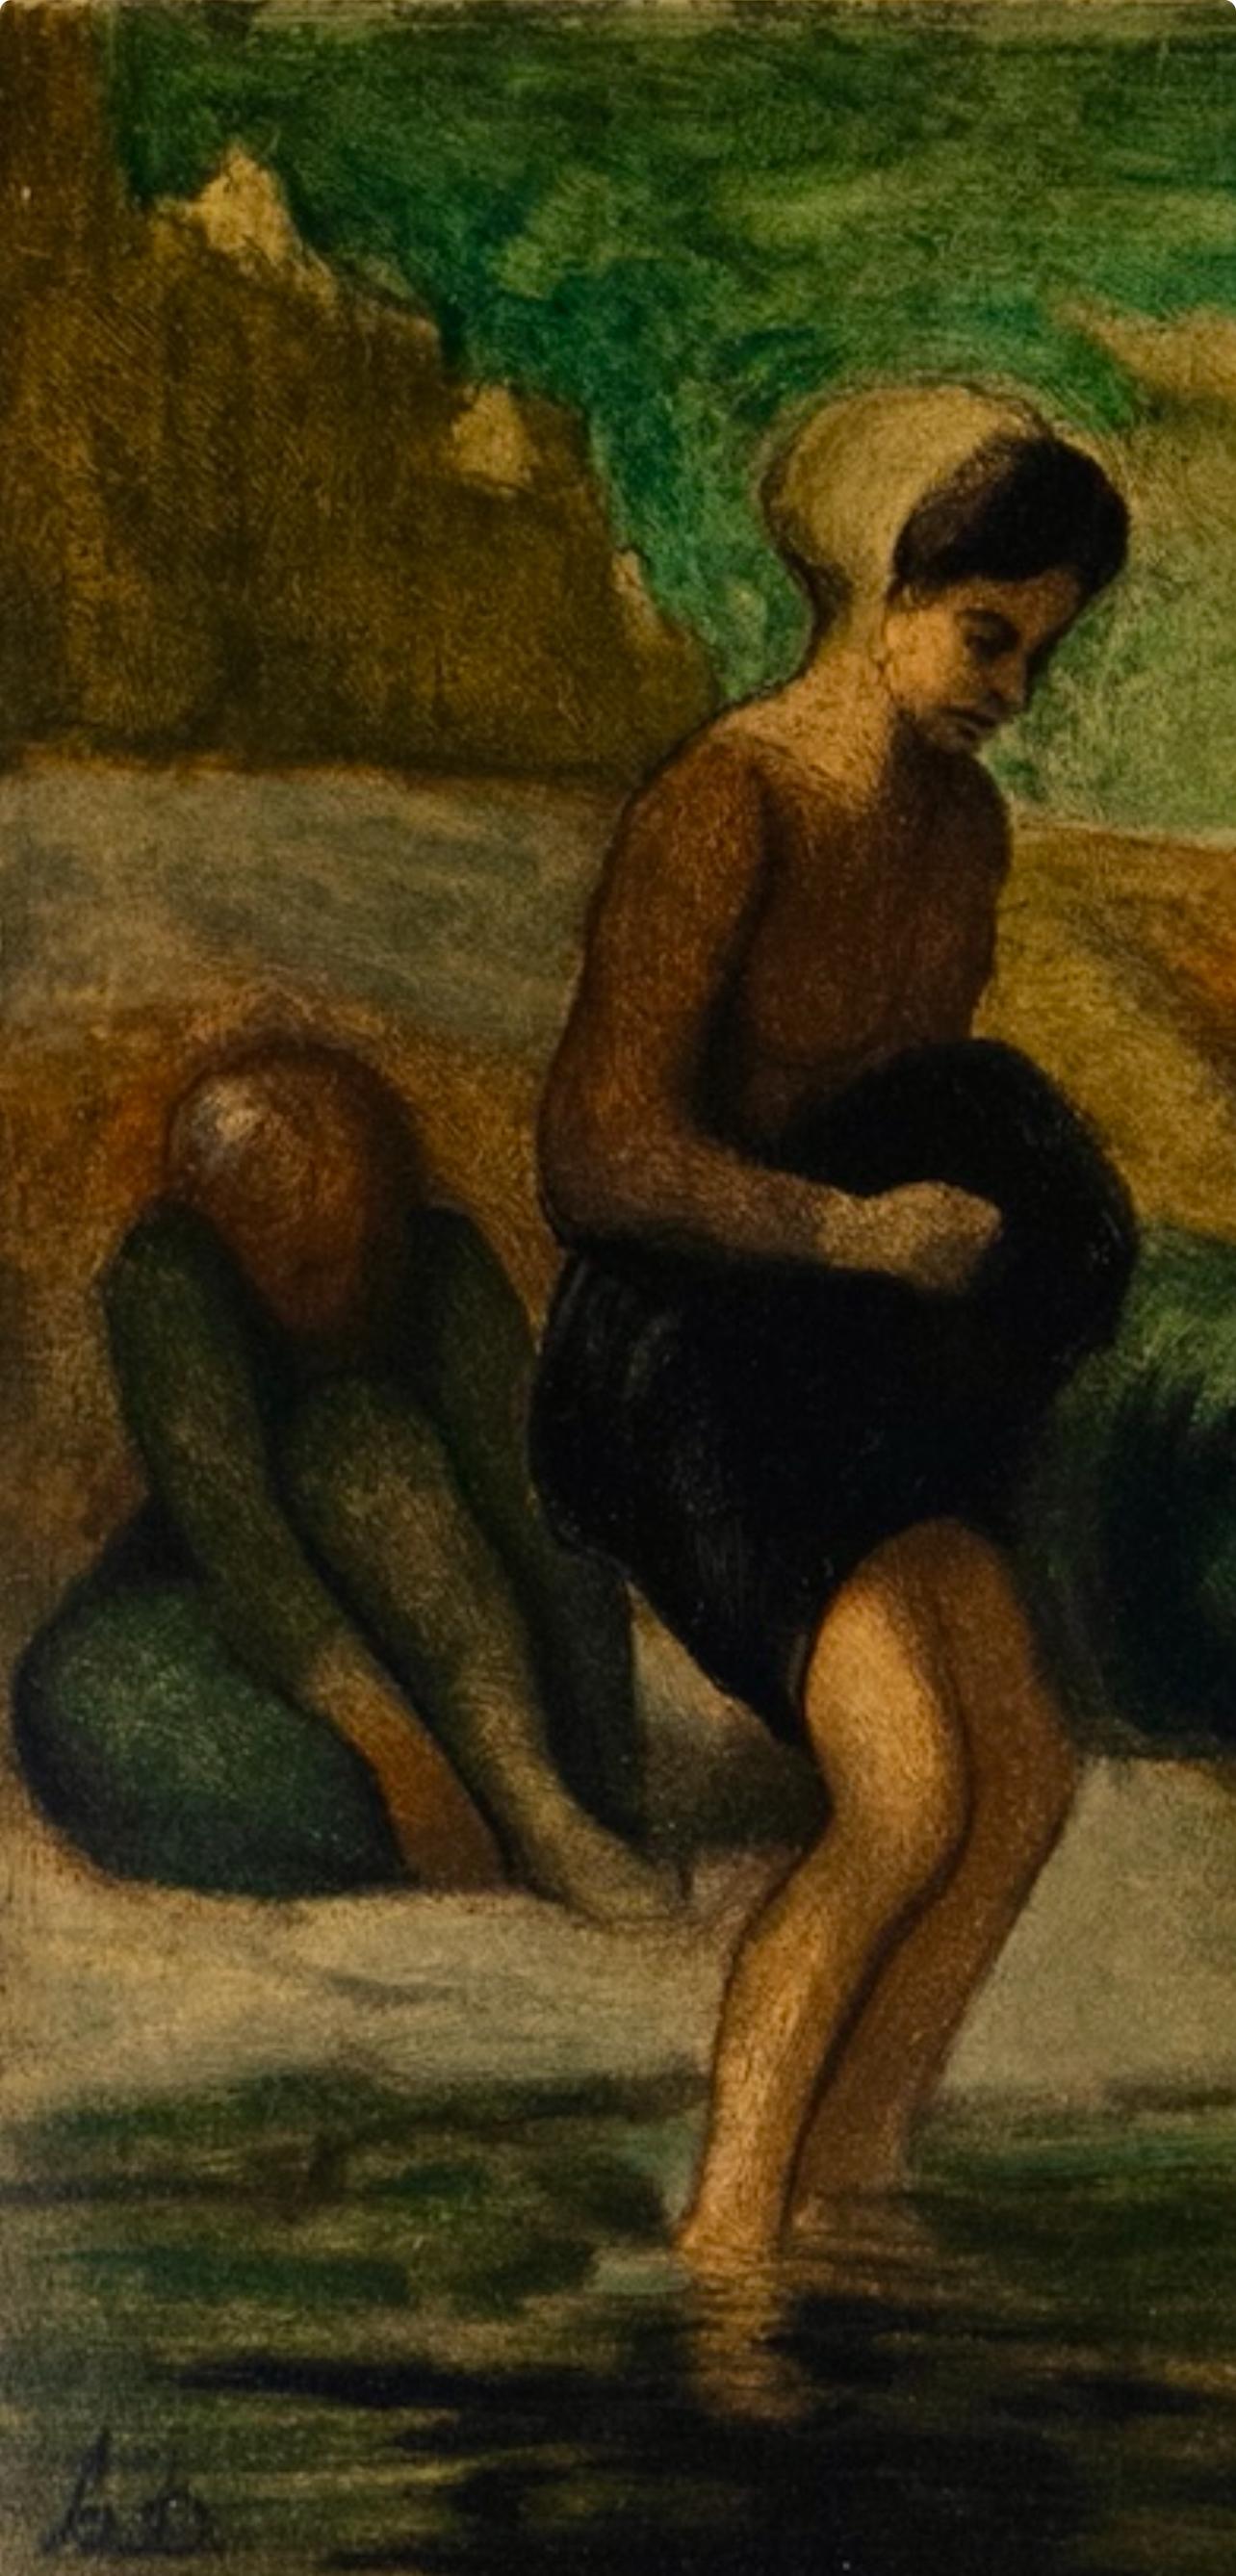 Daumier, Au bord de l'eau, Les Réalistes Lyriques (after) - Print by Honoré Daumier